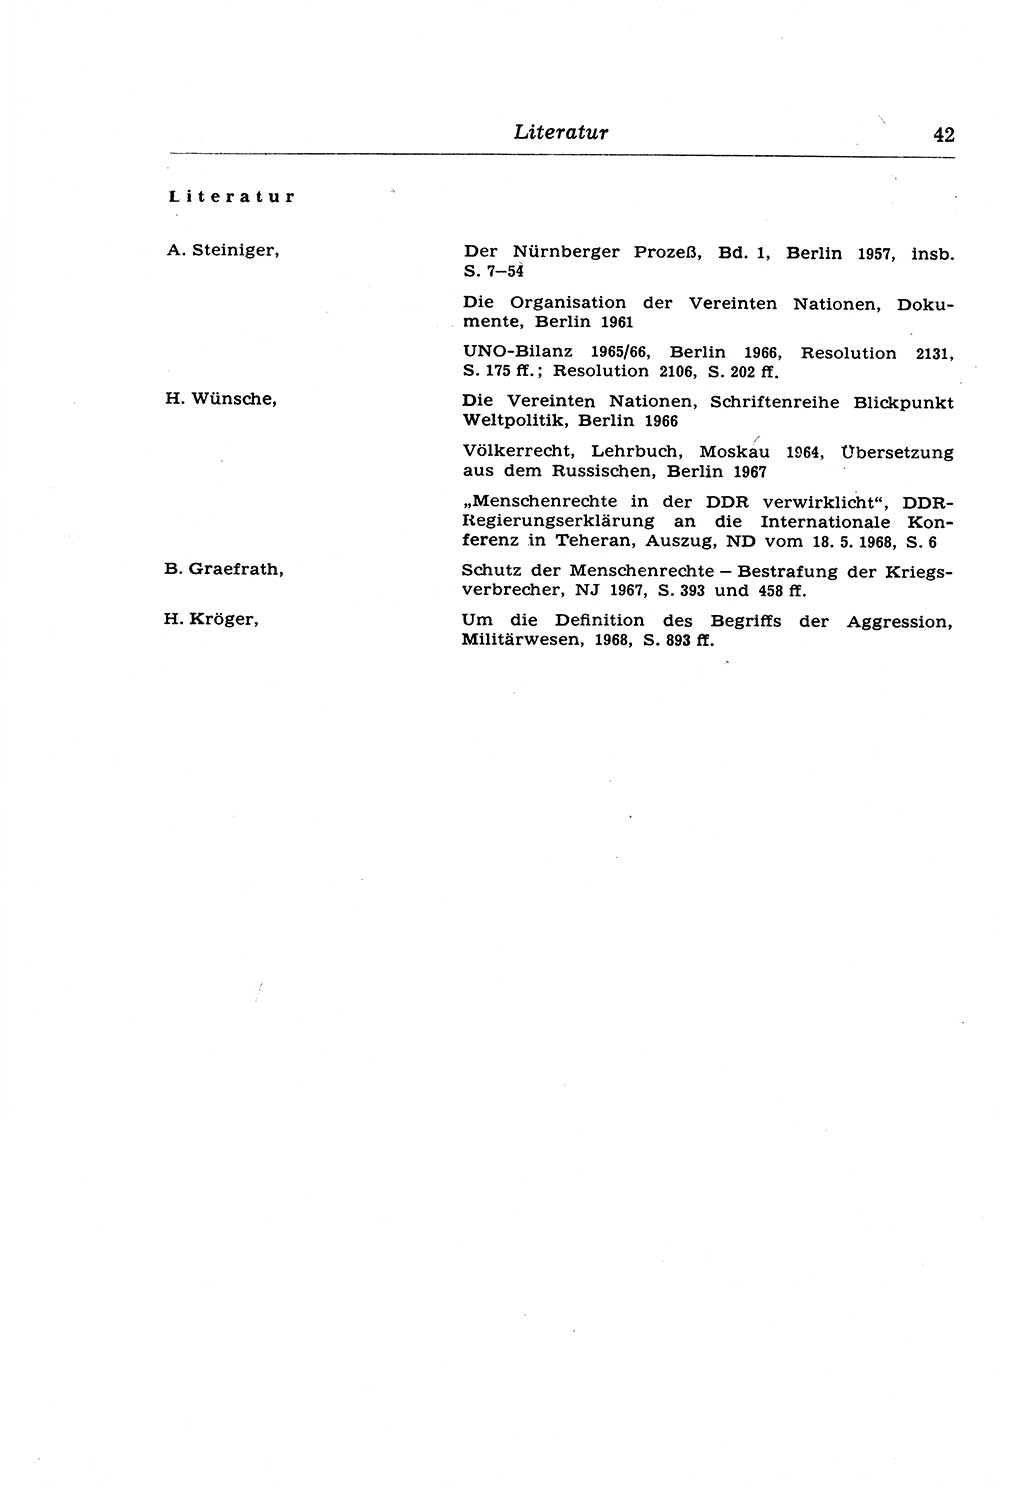 Strafrecht der Deutschen Demokratischen Republik (DDR), Lehrkommentar zum Strafgesetzbuch (StGB), Besonderer Teil 1970, Seite 42 (Strafr. DDR Lehrkomm. StGB BT 1970, S. 42)